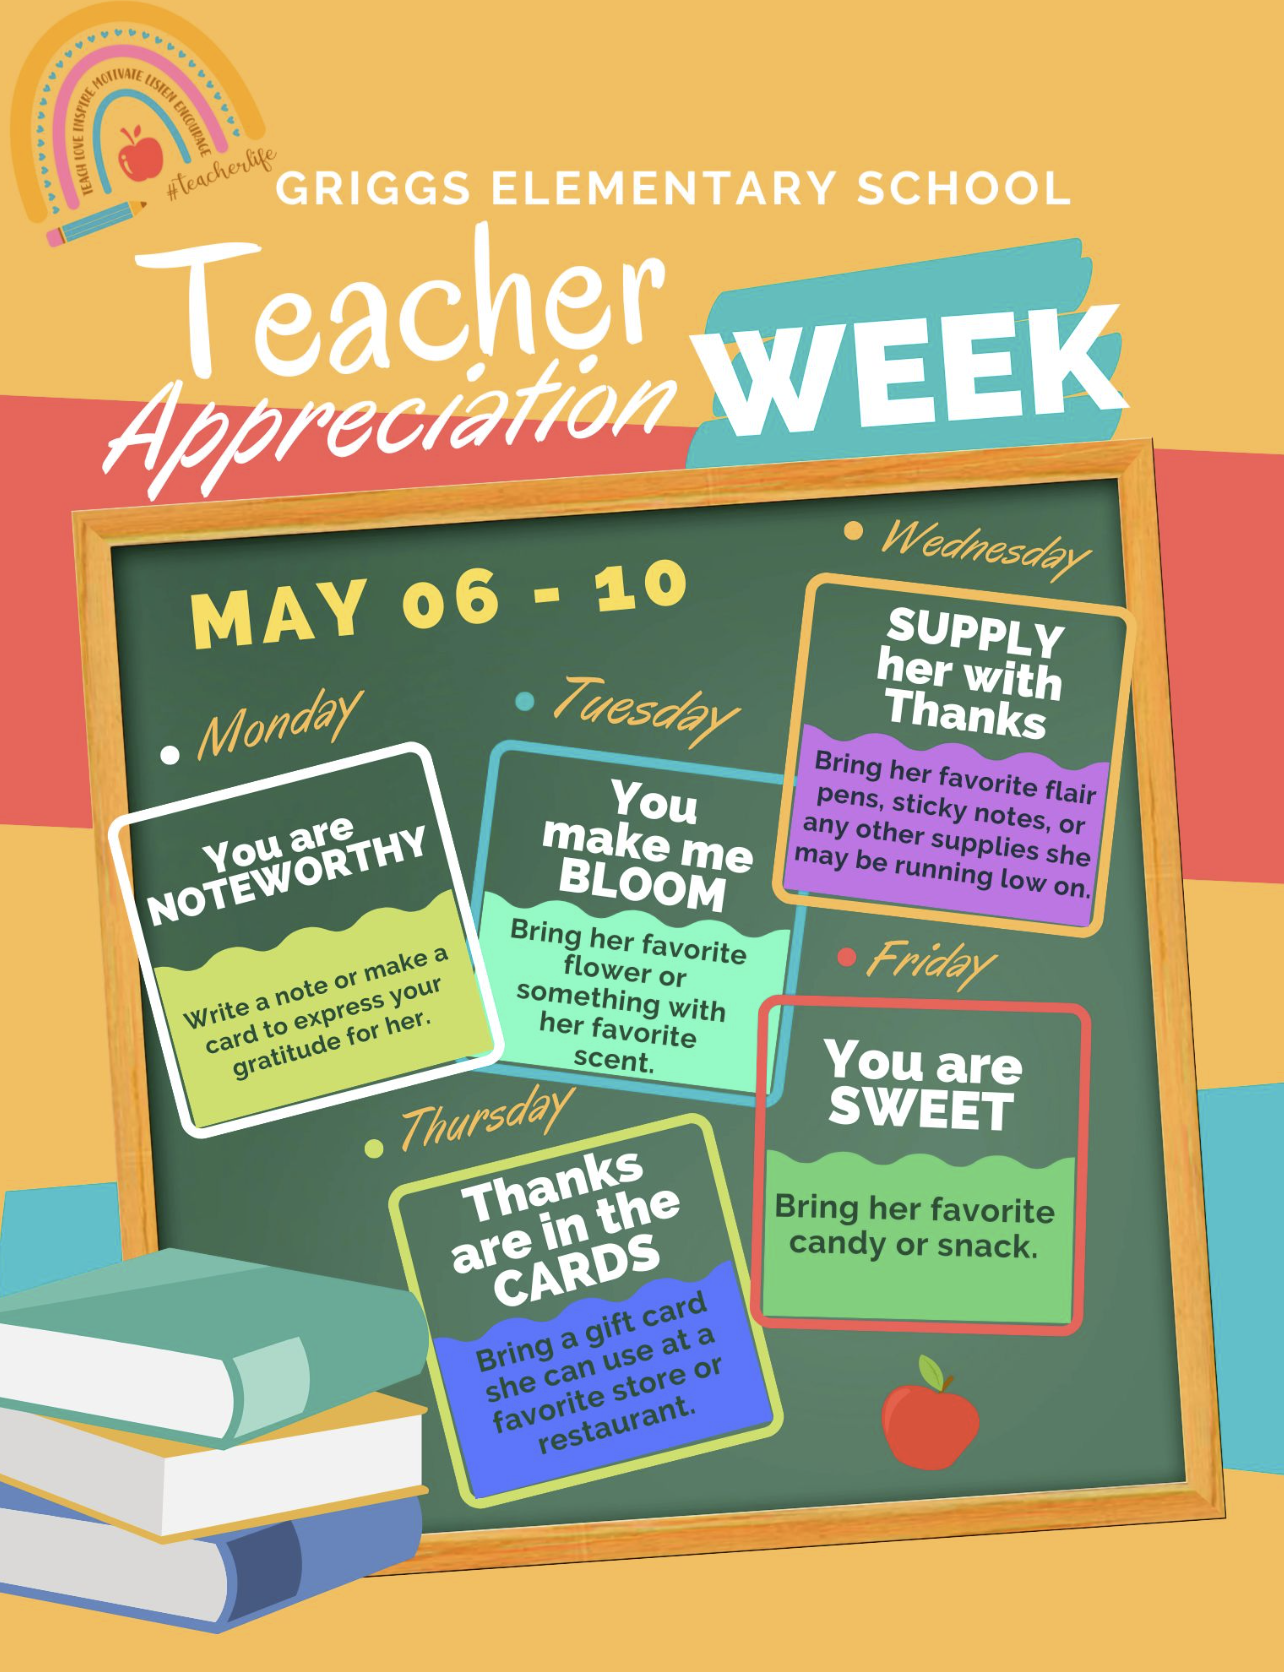 Appreciation week info